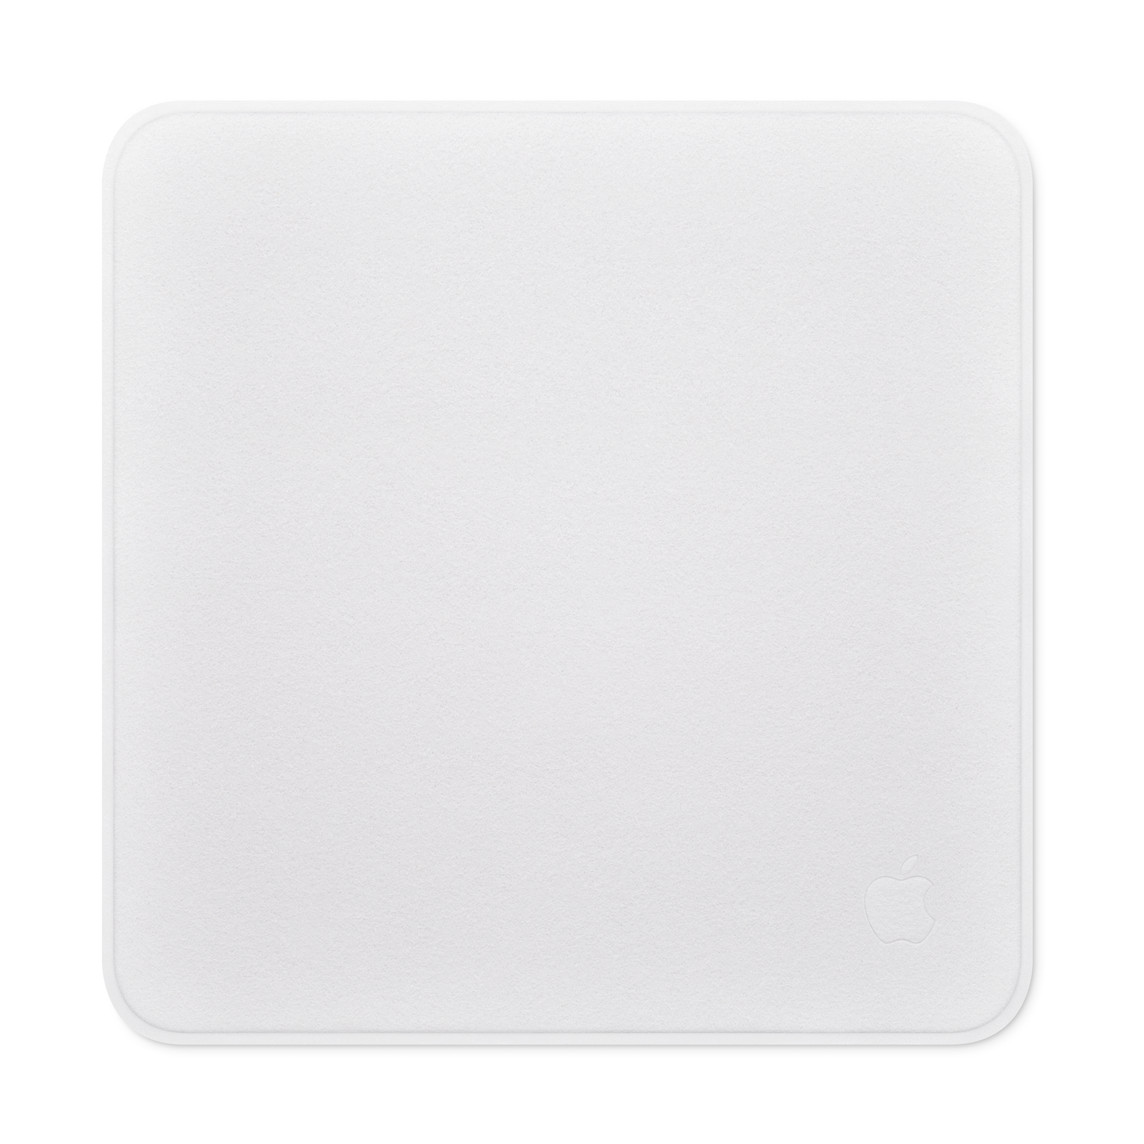 Pano de polimento para limpar com segurança e eficiência a tela de qualquer aparelho Apple, incluindo vidro nano-texture.